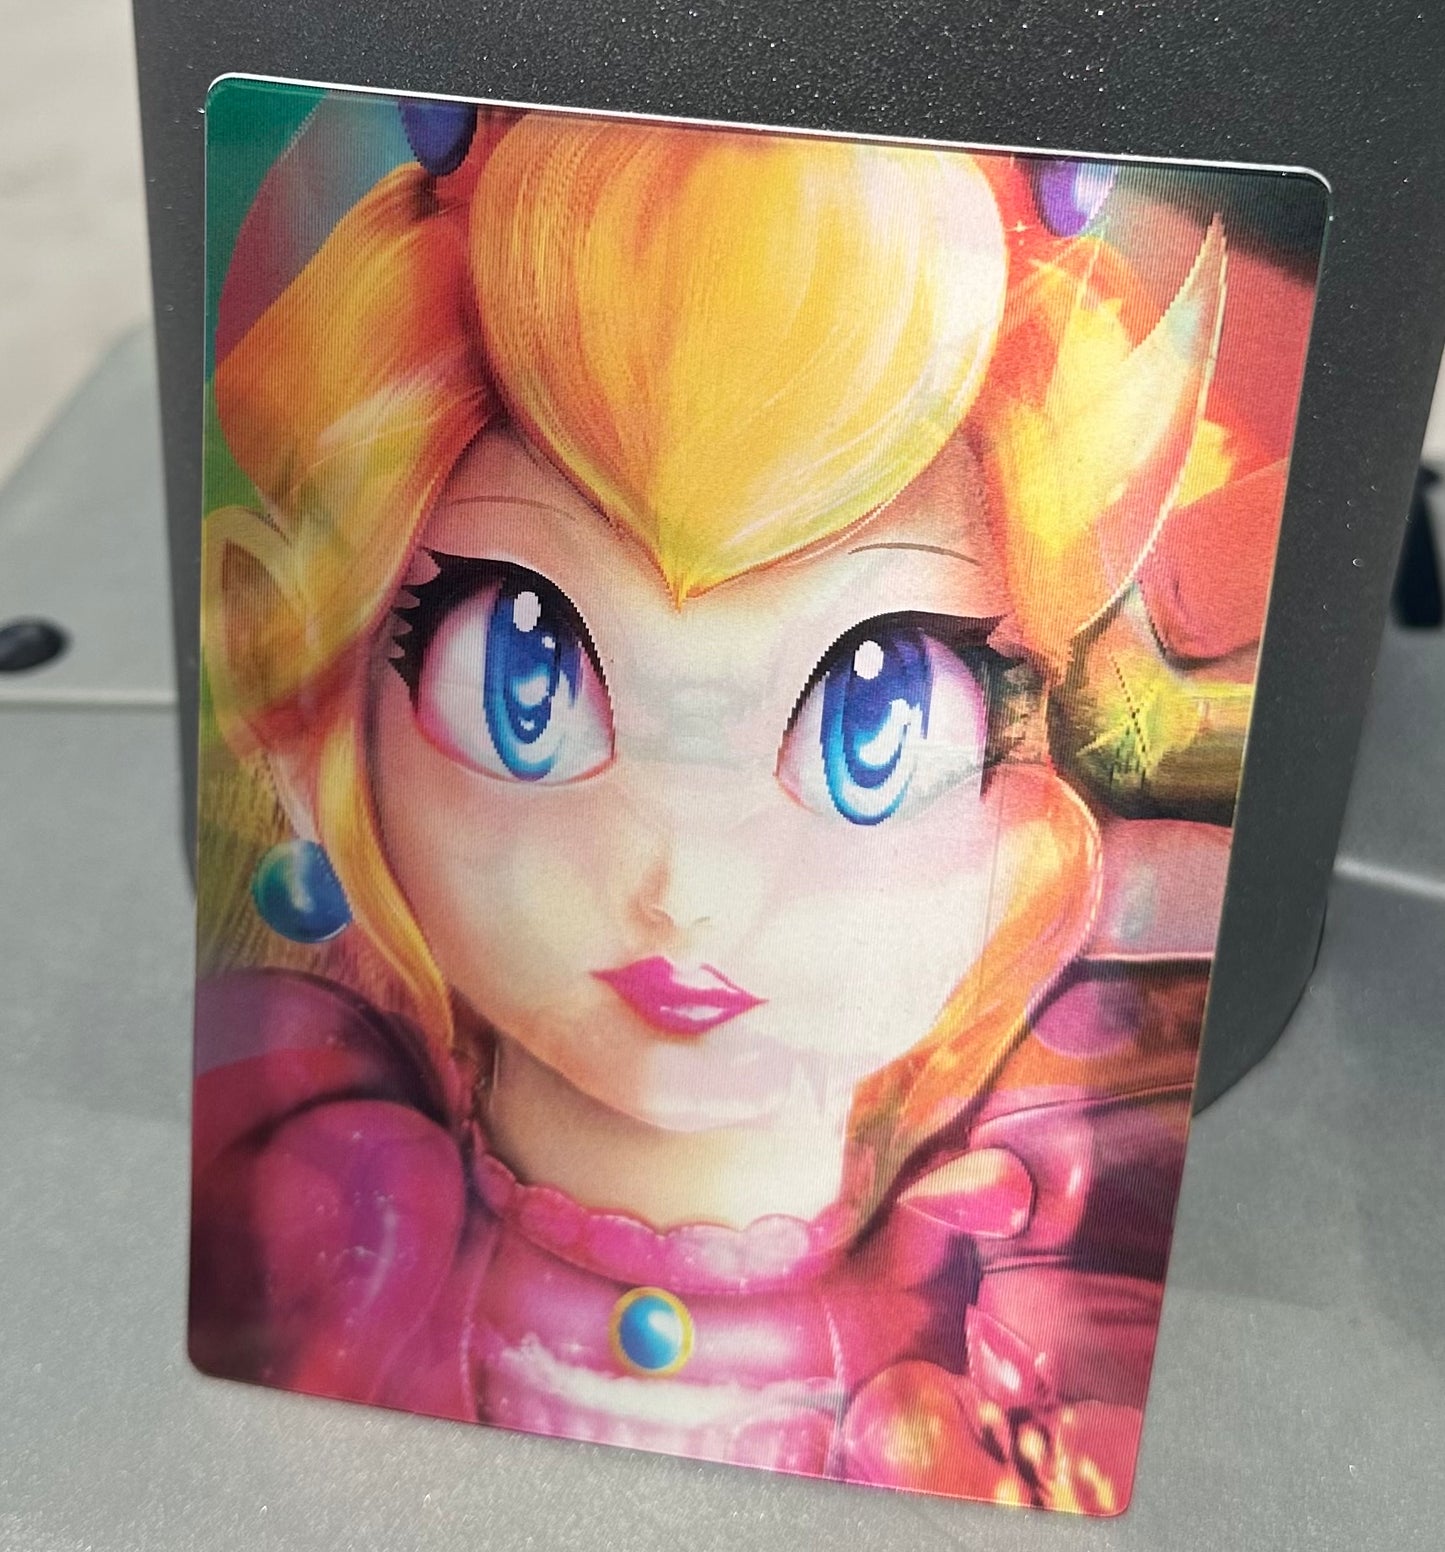 Mario Princess Peach Bowser 3D Sticker Decal